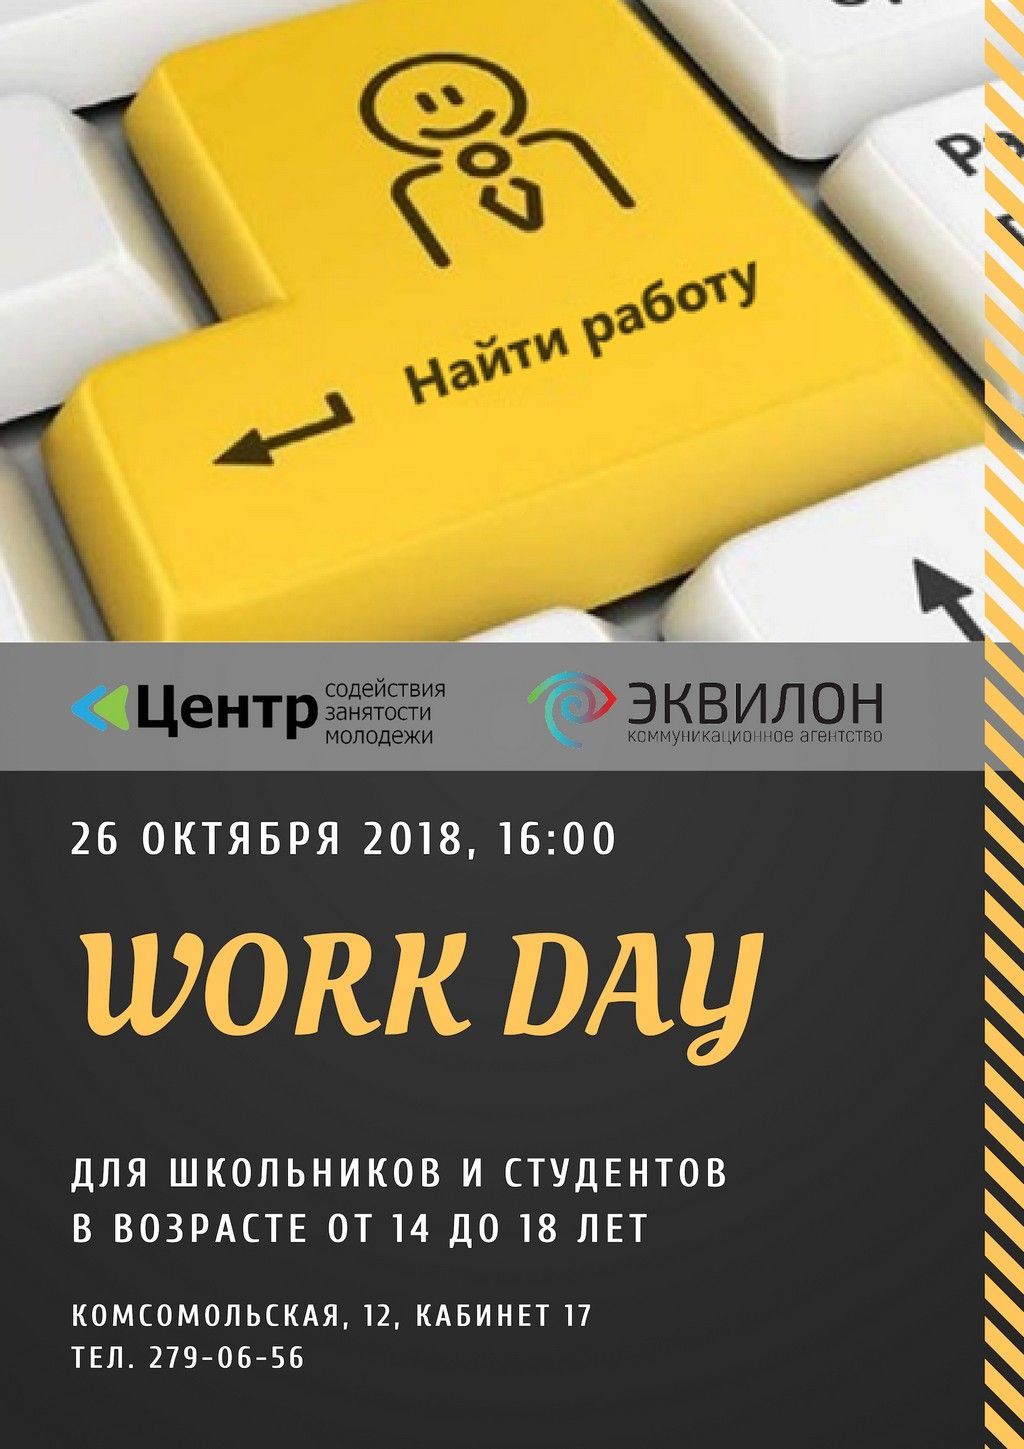 В Уфе пройдет «WorkDay» для несовершеннолетних граждан